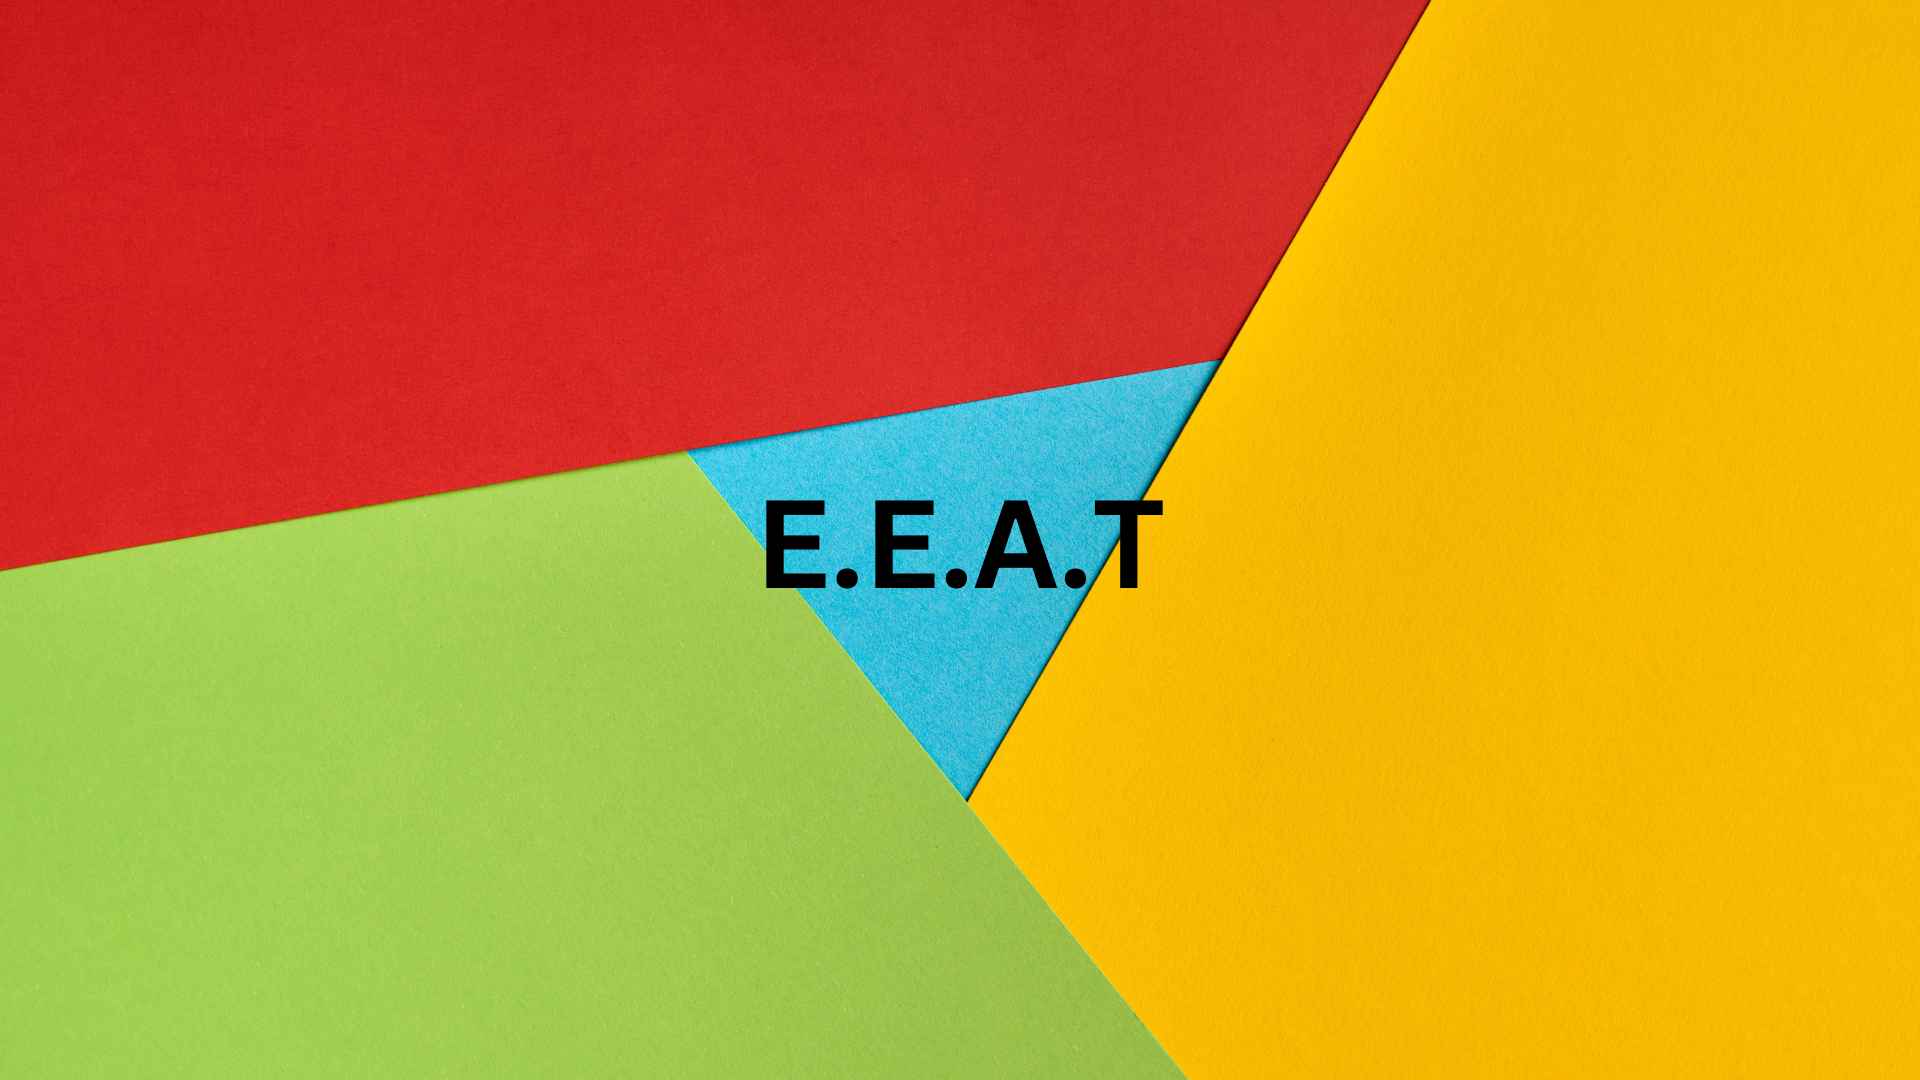 E.E.A.T